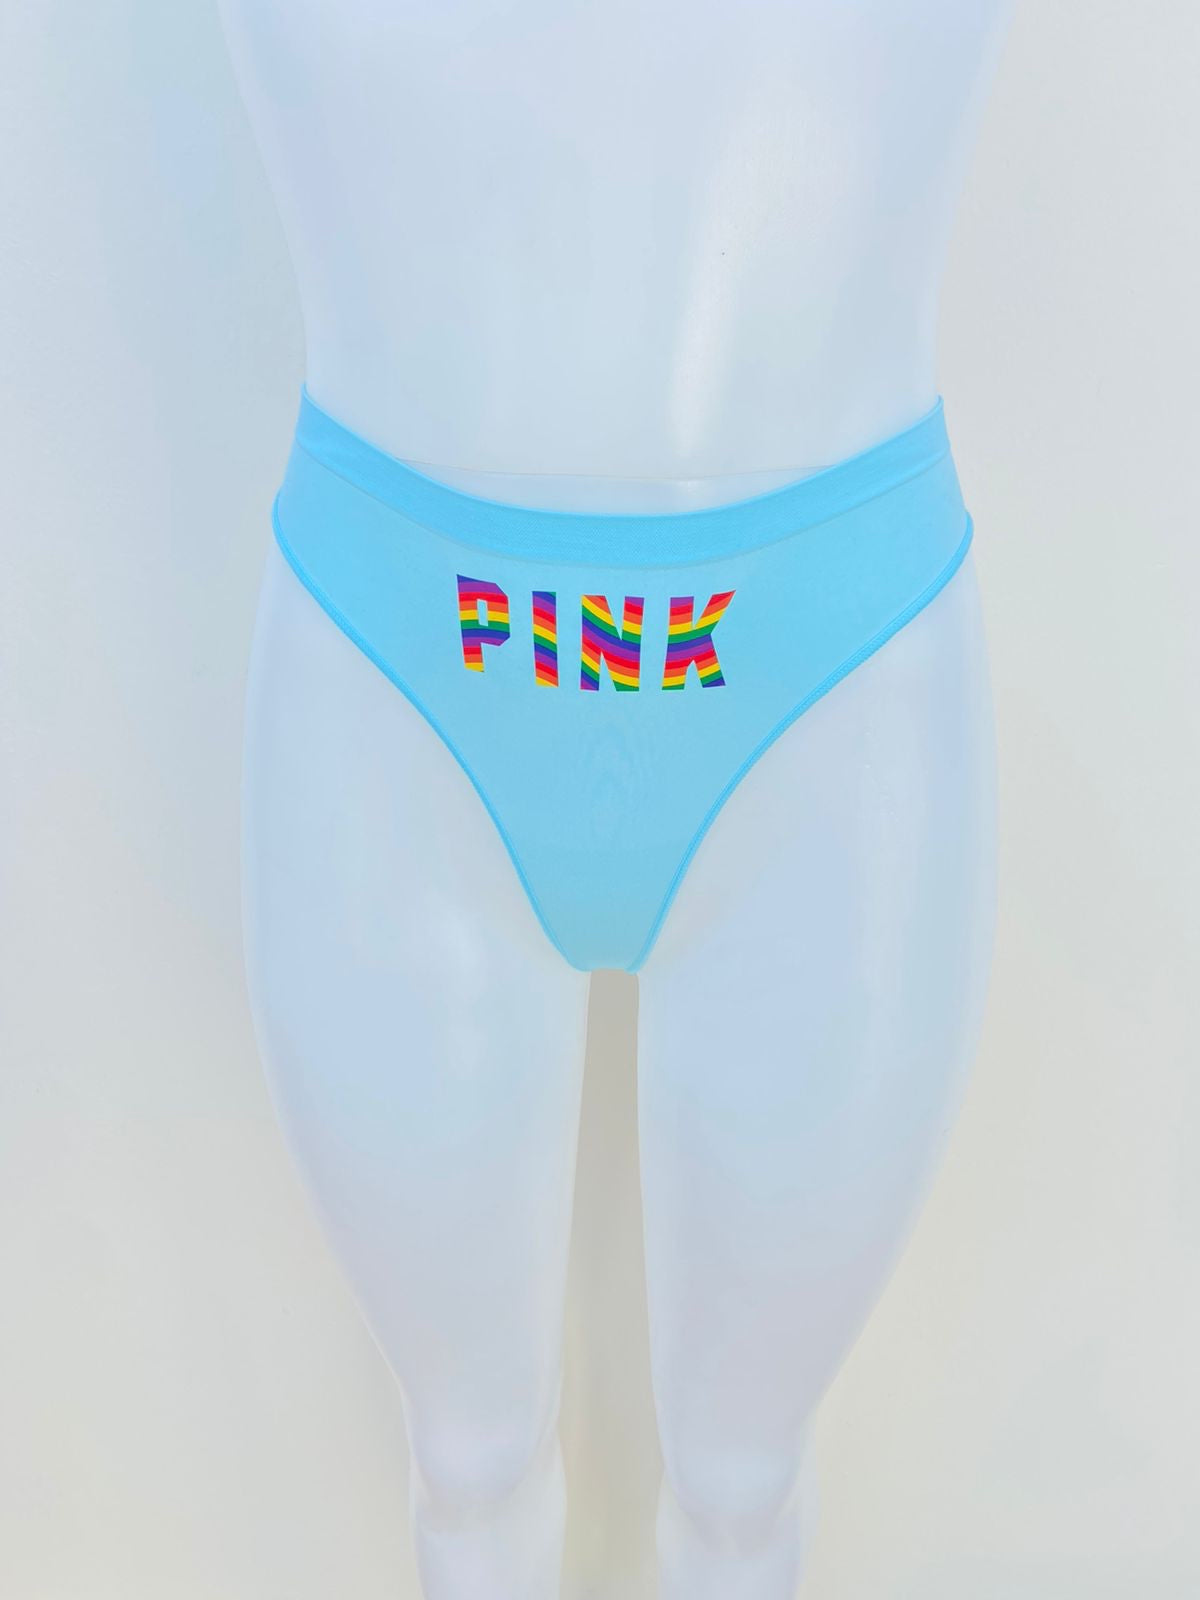 Panti PINK Victoria’s Secret original, azul claro con letras PINK de colores.